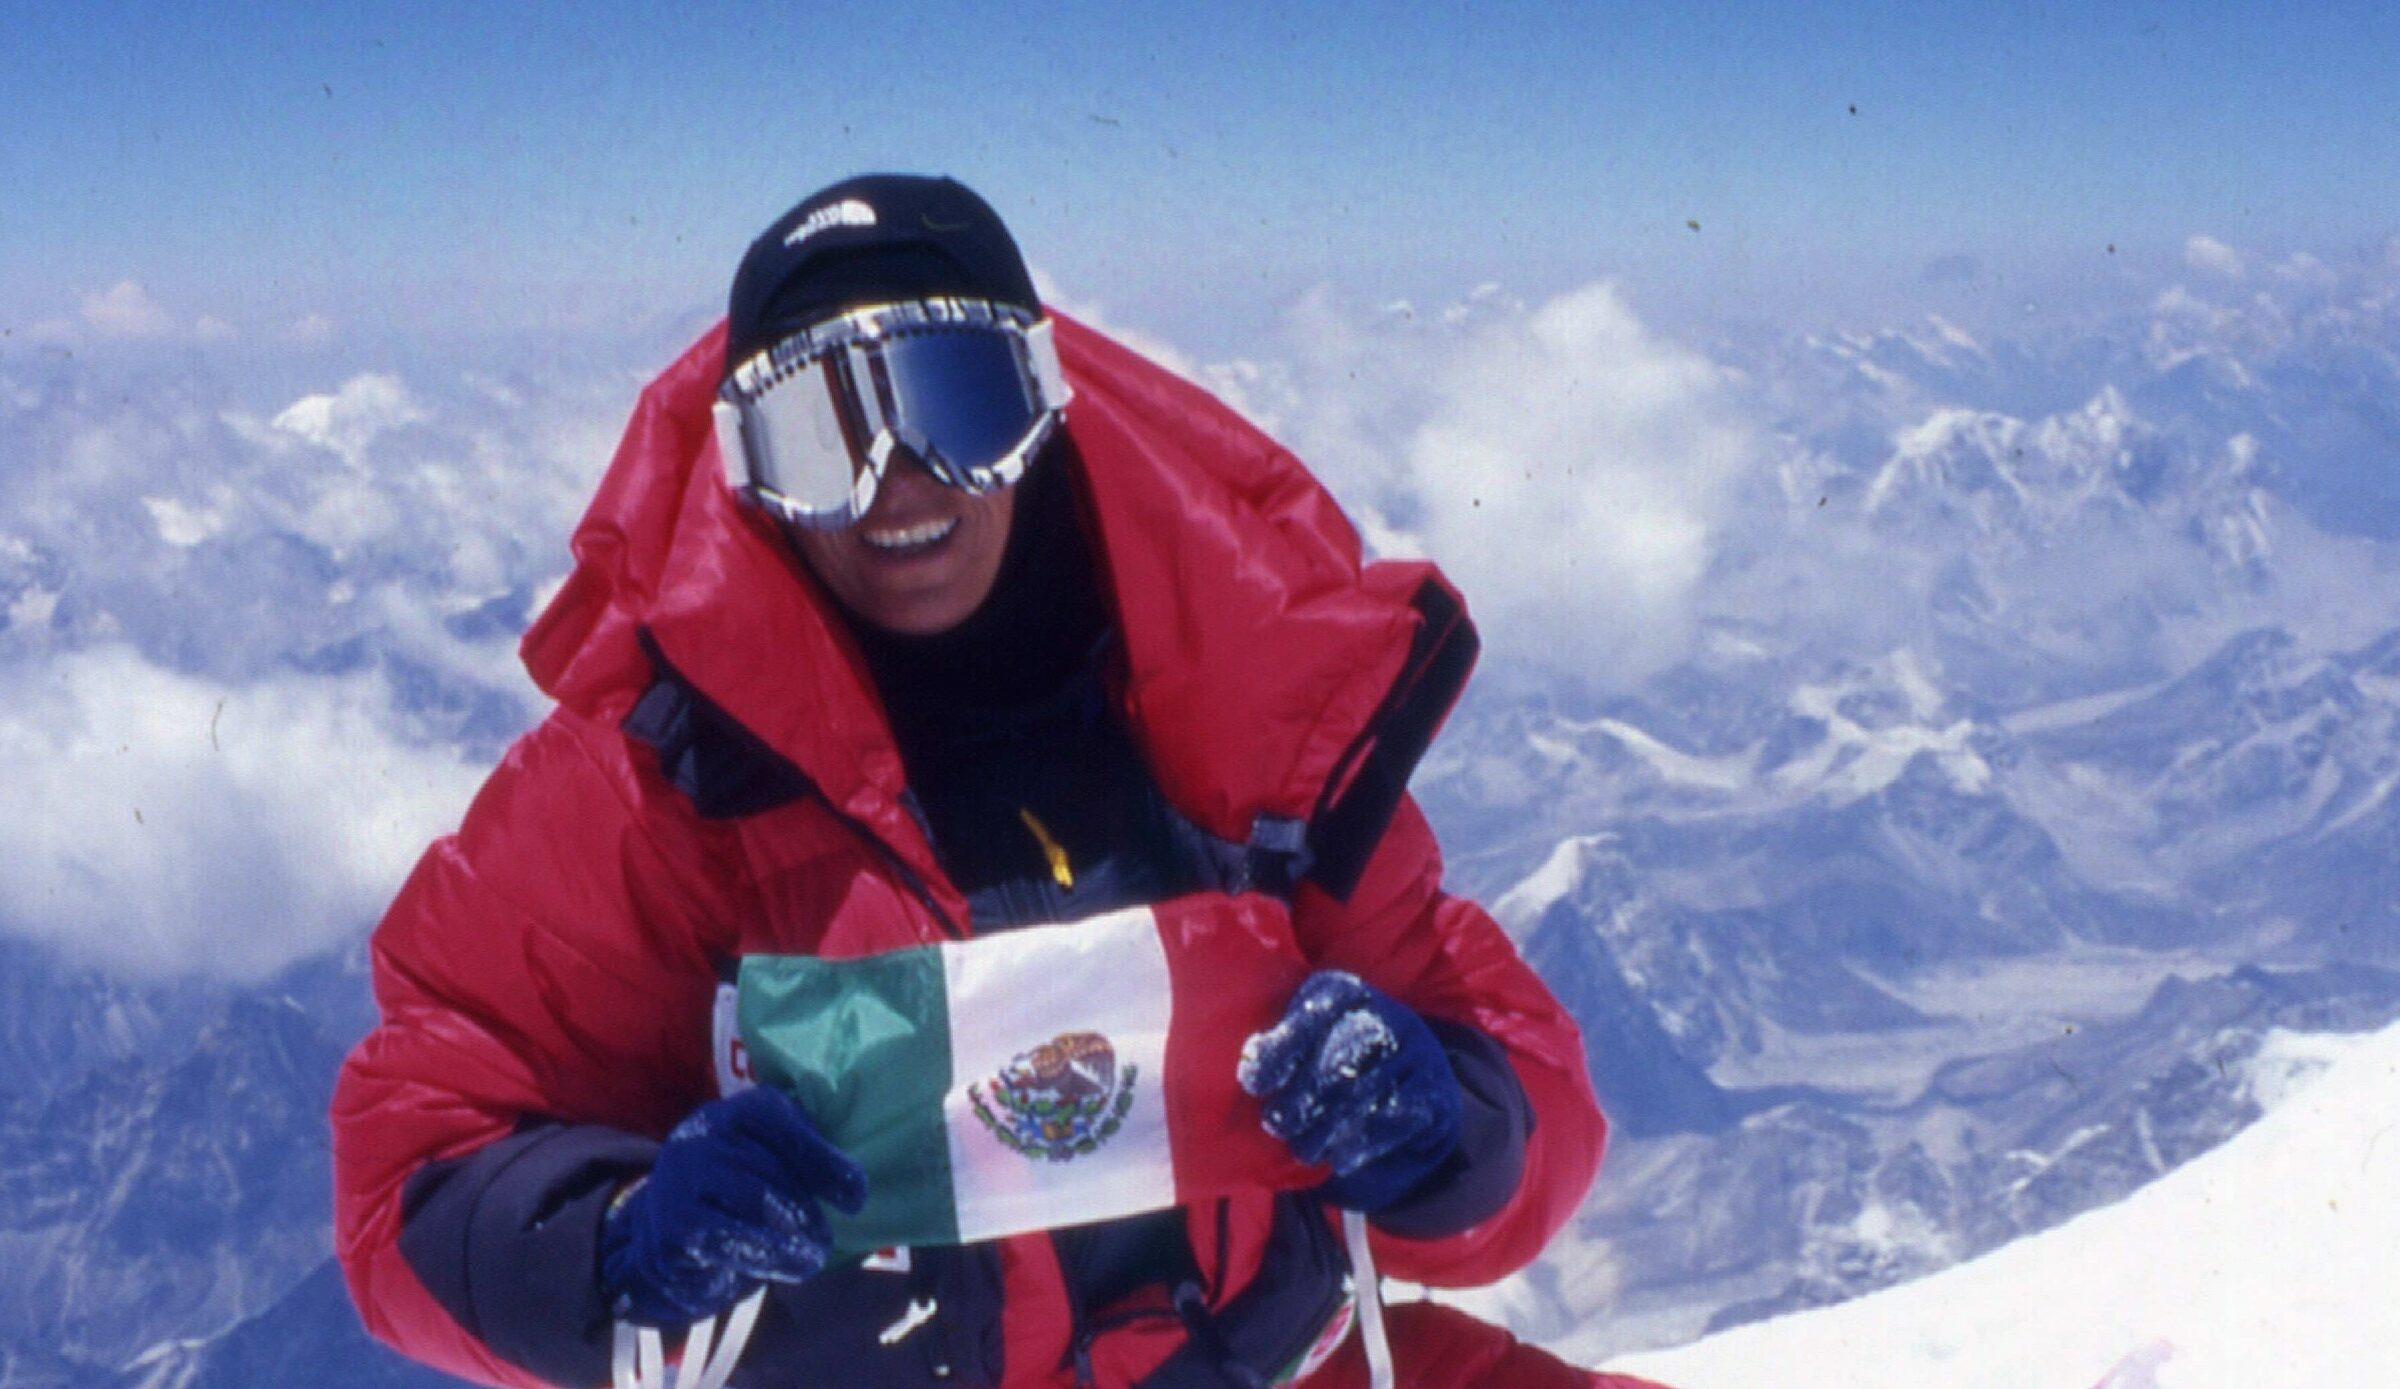 ENTREVISTA EXCLUSIVA: Elsa Ávila, a 25 años de ser la primera latinoamericana en subir el monte Everest: “La fusión con la montaña es lo que me alimenta”